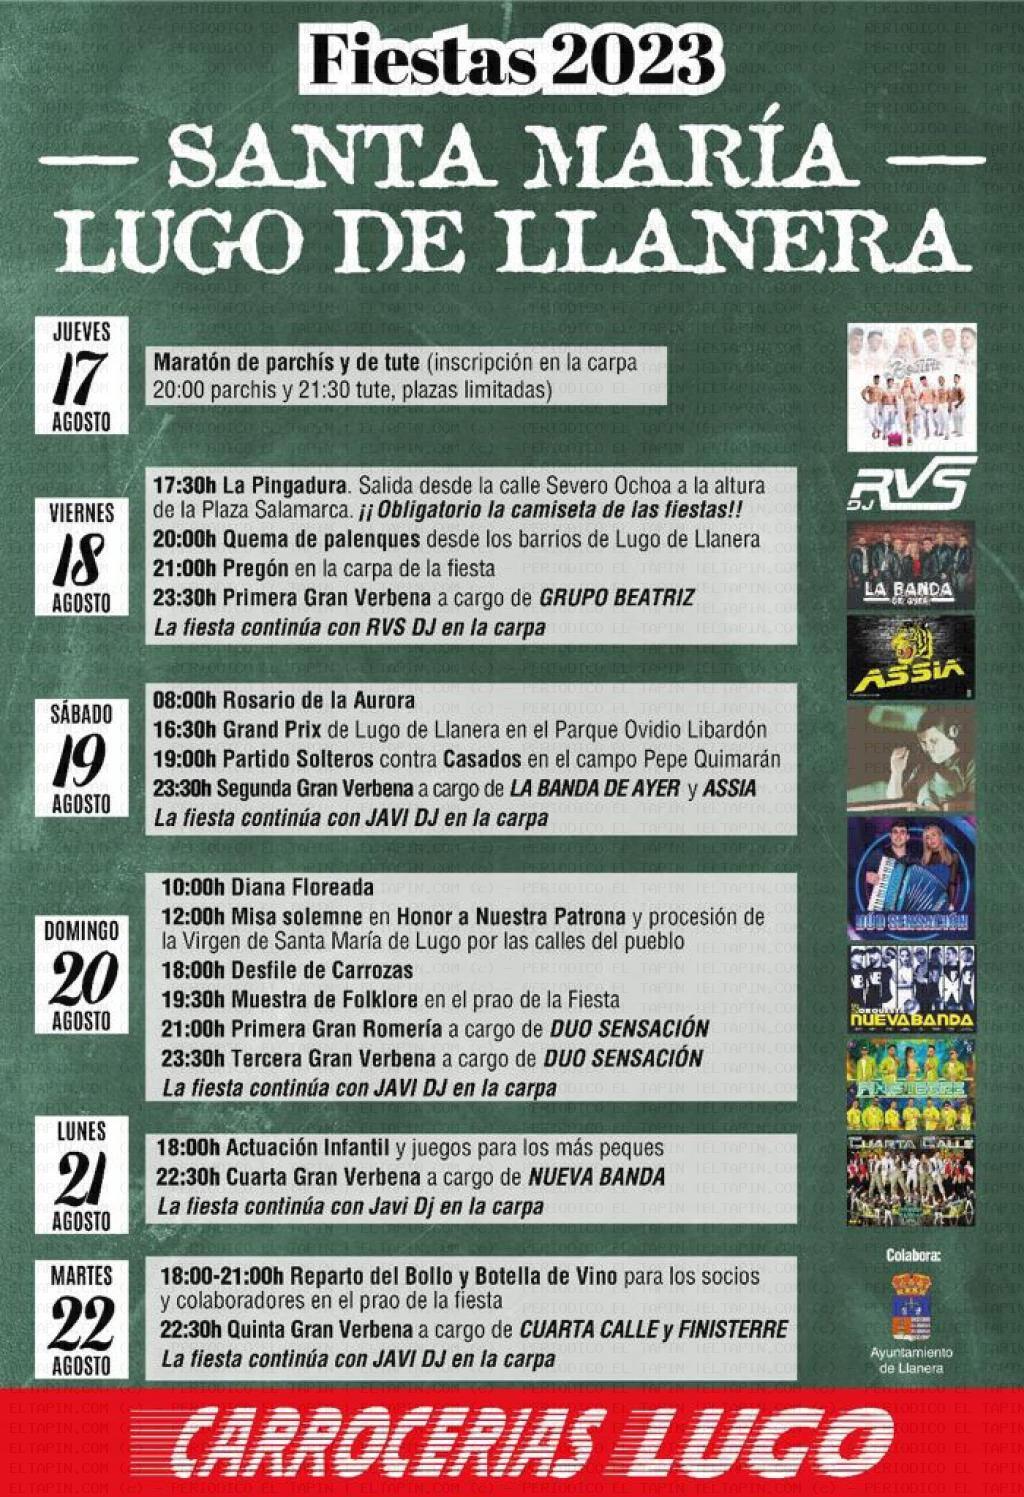 El Tapin - Lugo de Llanera celebra las fiestas de Santa María del 17 al 22 de agosto